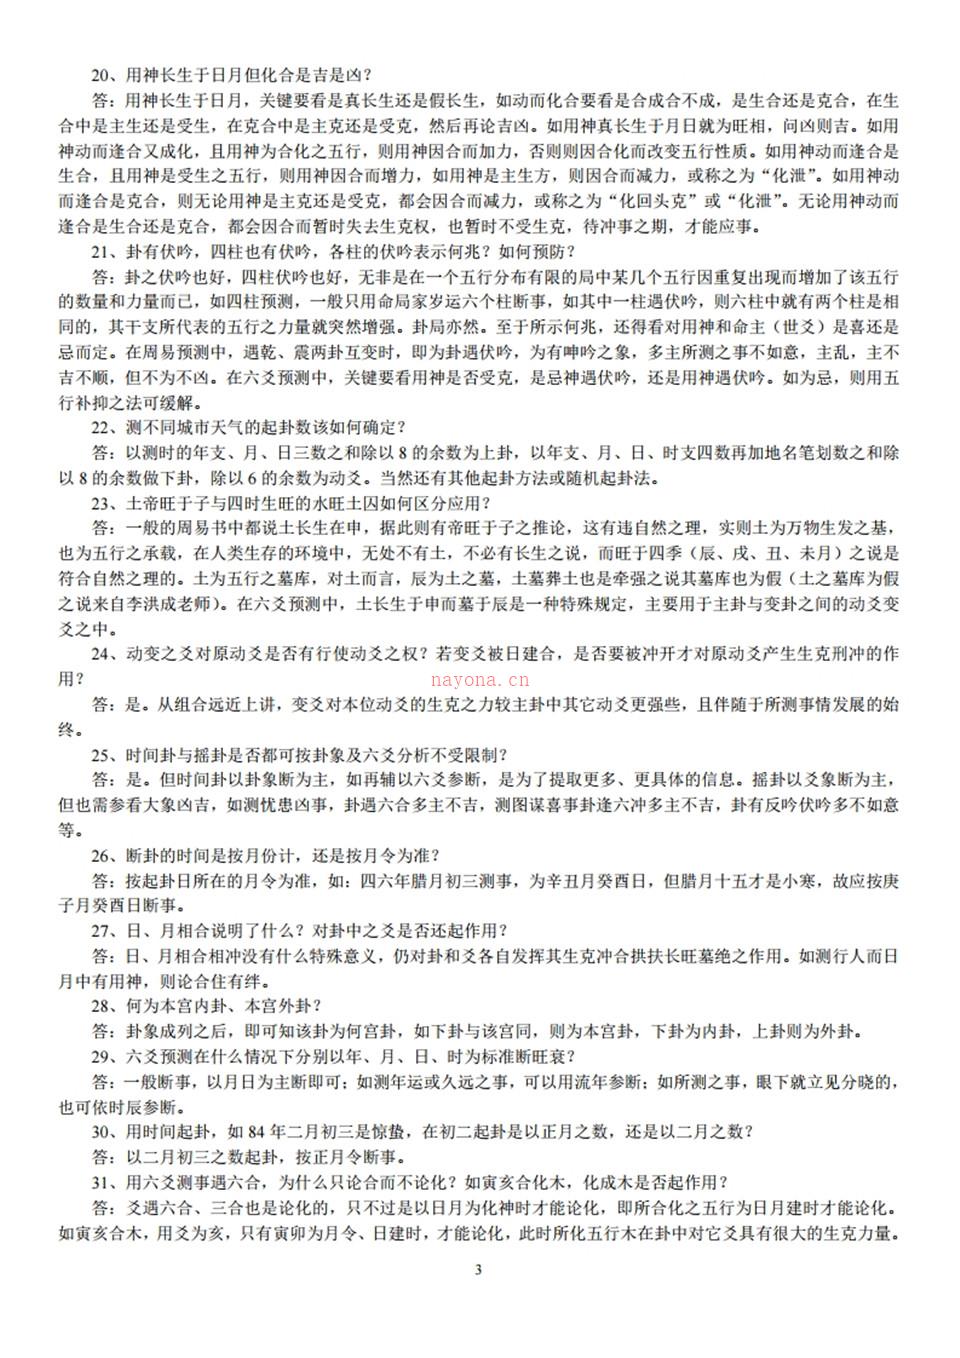 《李洪成六爻答疑500问》.pdf 百度网盘资源